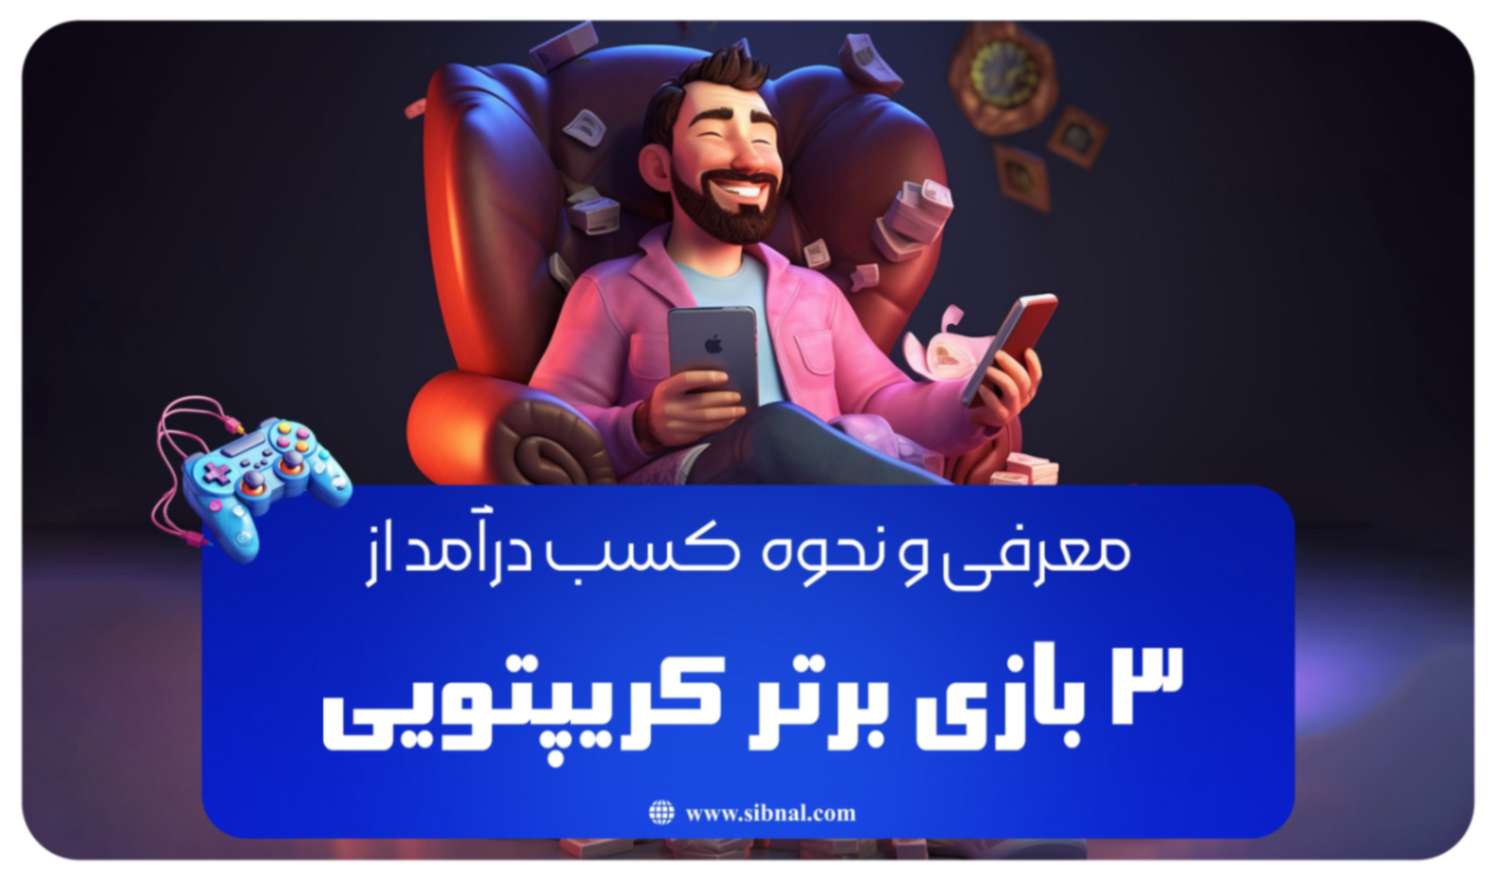 معرفی 3 بازی برتر کریپتویی جهت کسب درآمد | سیبنال